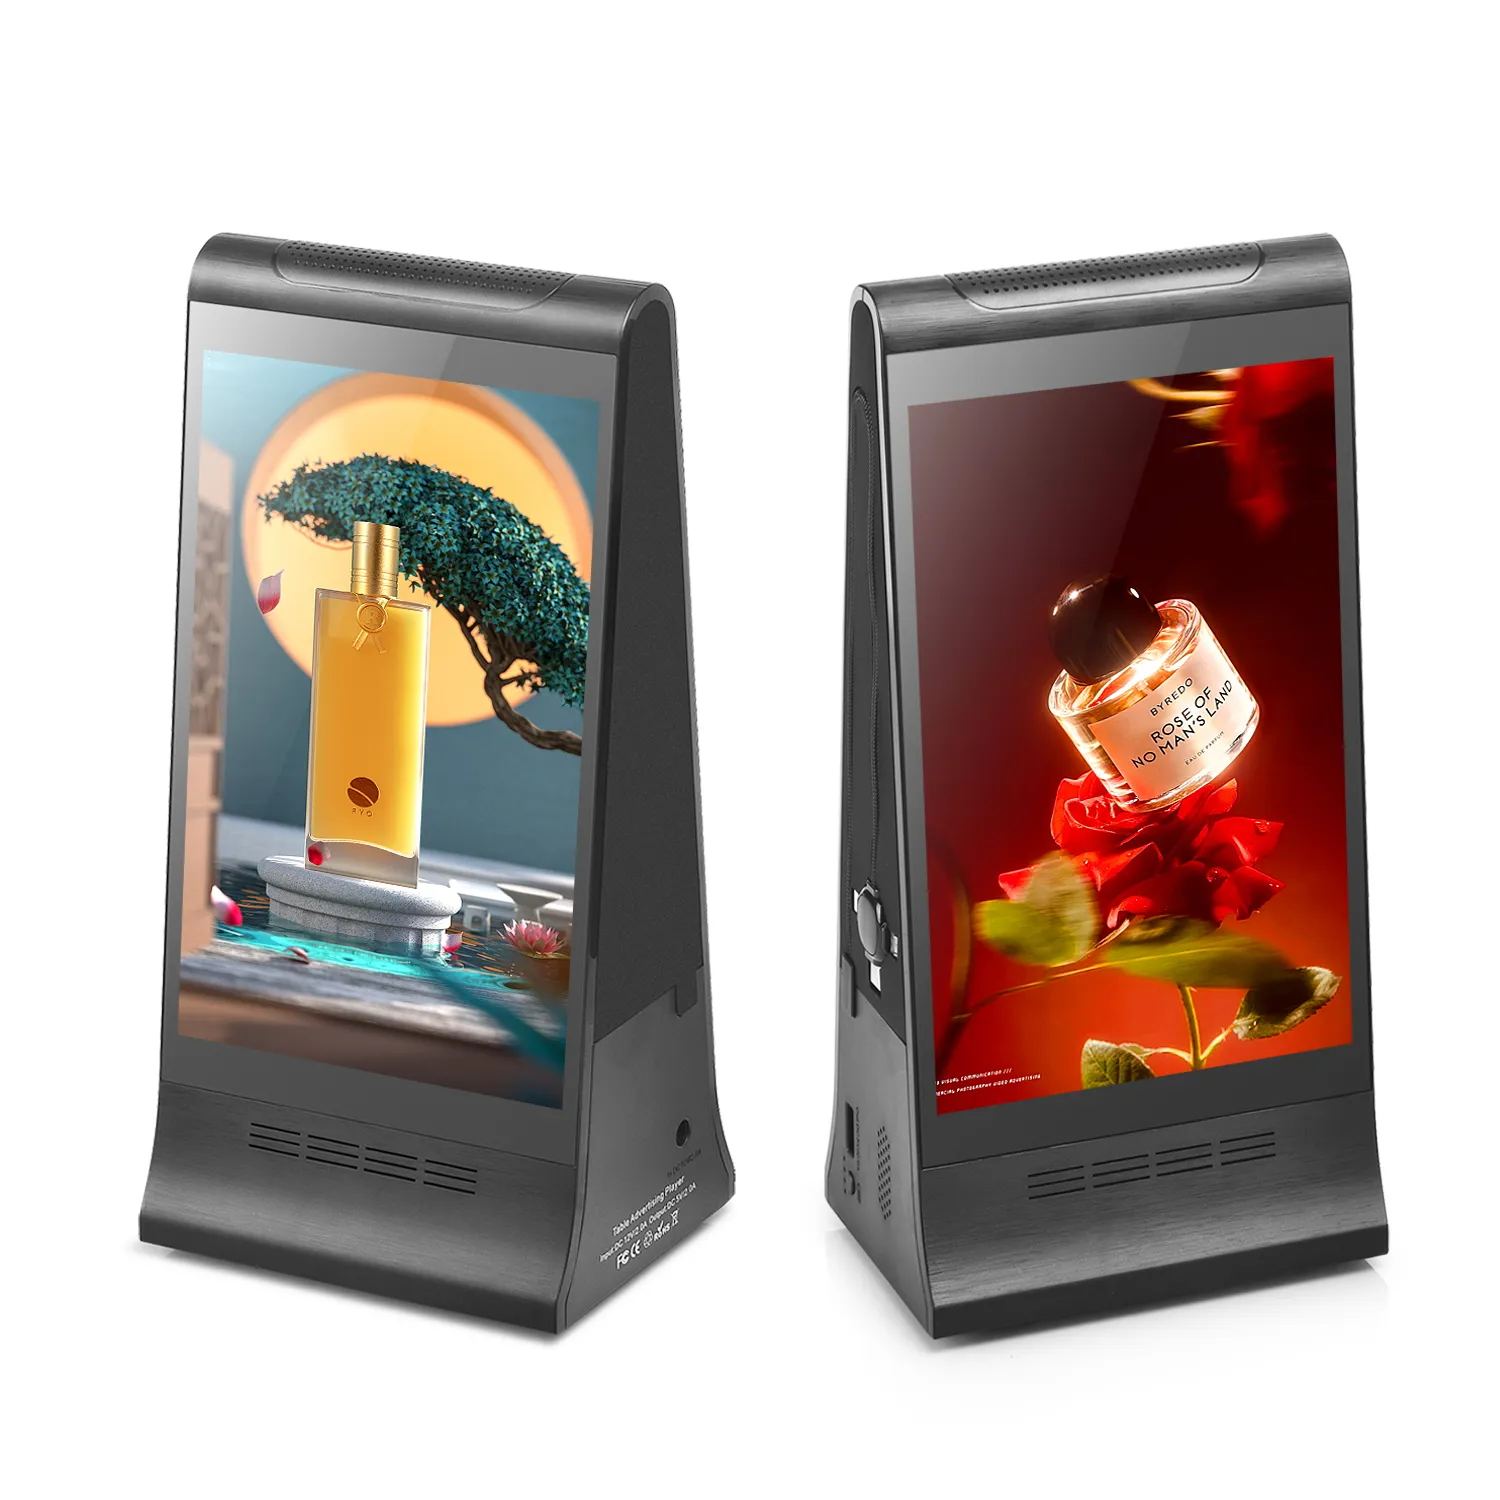 FYD-868プラスX新しい広告機器屋内卓上レストランテーブルトップ両面デジタルディスプレイ広告ディスプレイ